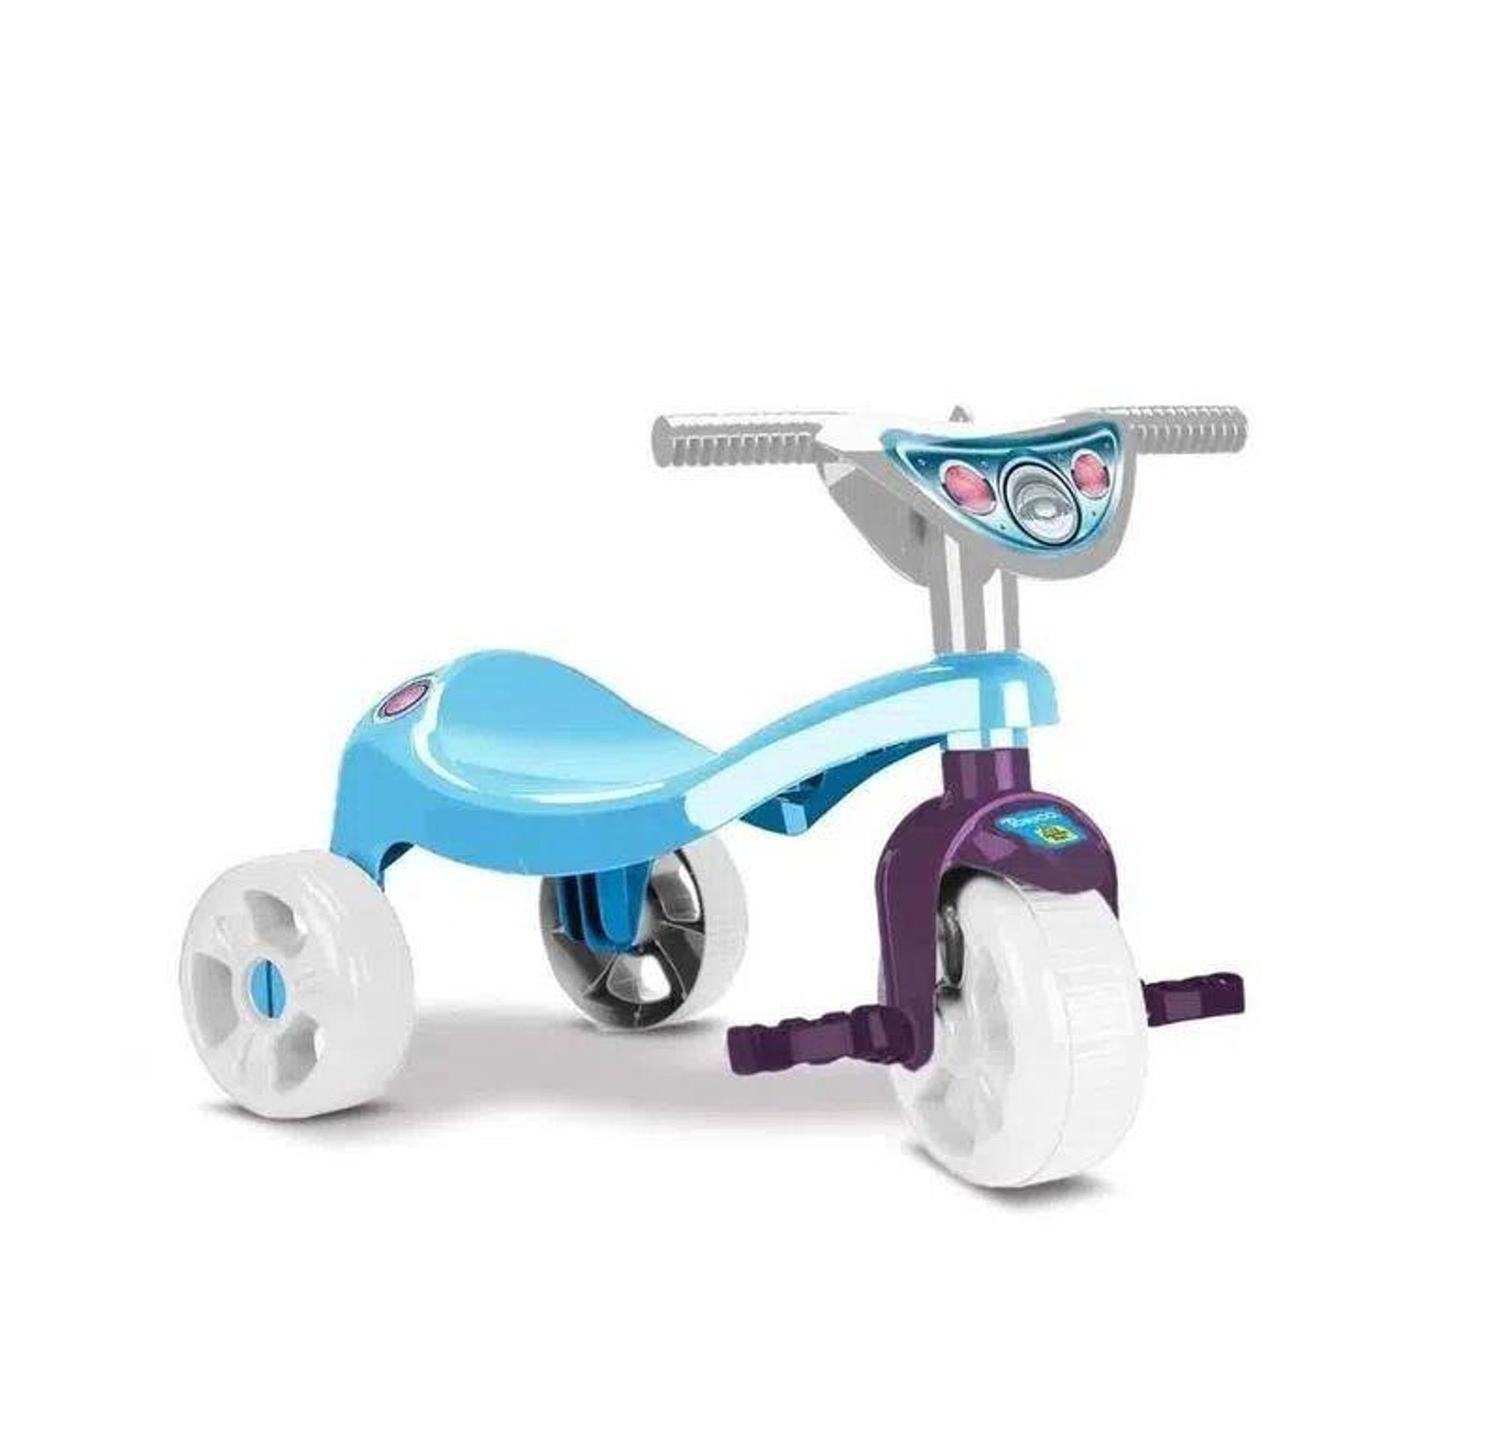 Triciclo Infantil Motoca Velotrol Bike Bebe Totoca Pedal na